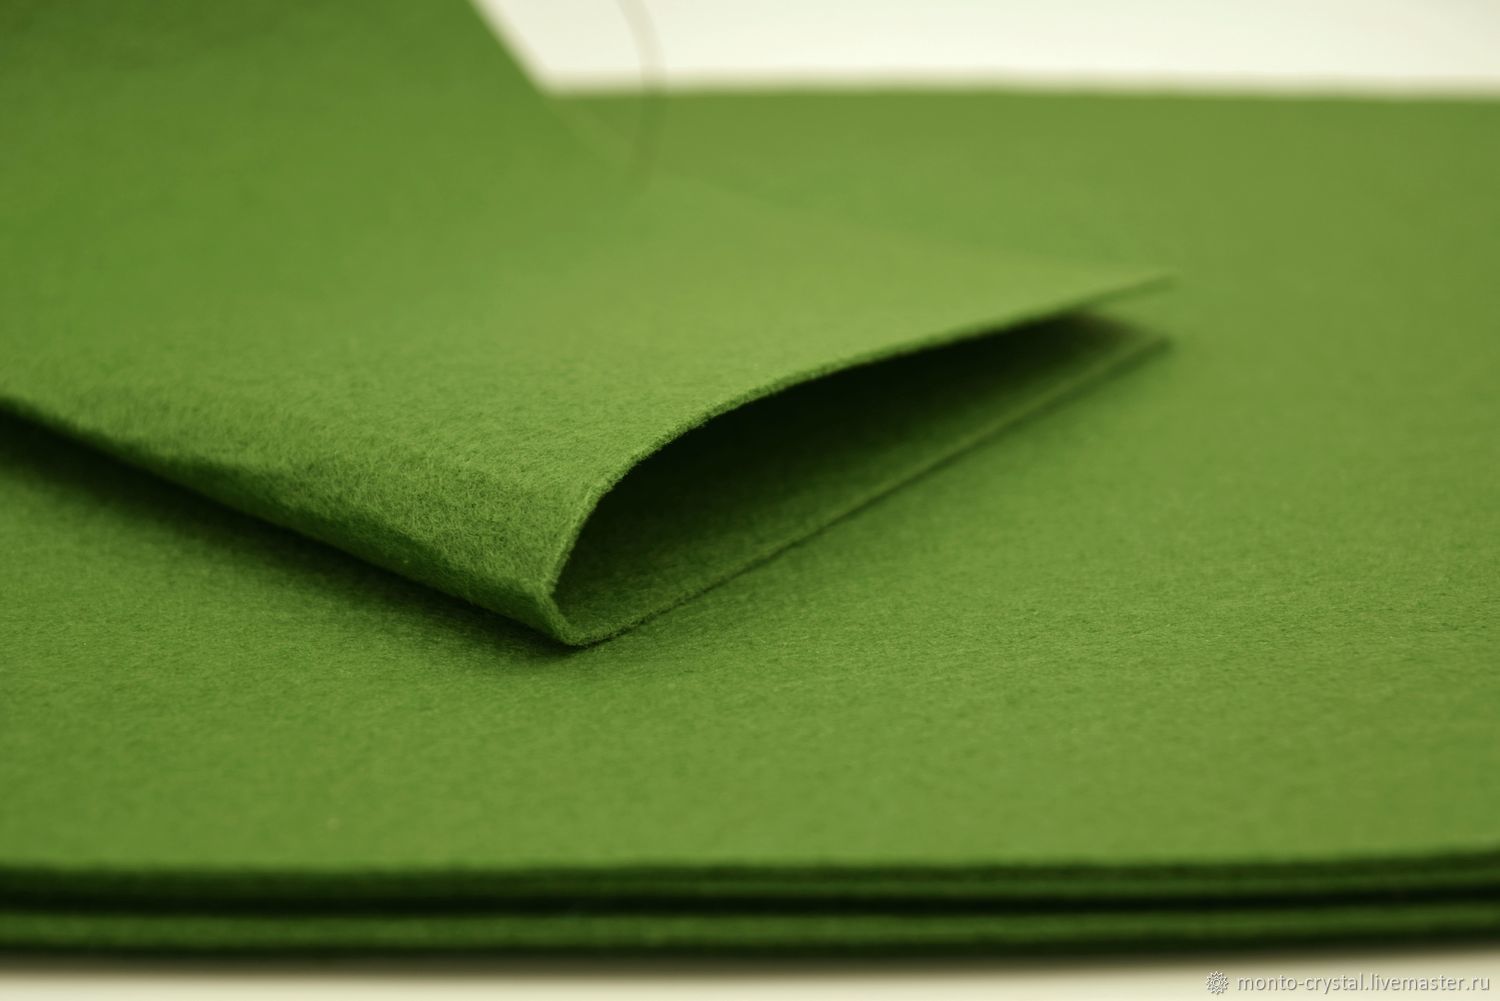 Корейский фетр. Зеленый фетр текстура. Плотная ткань похожая на фетр. Фетр корейский мягкий сочная зелень.